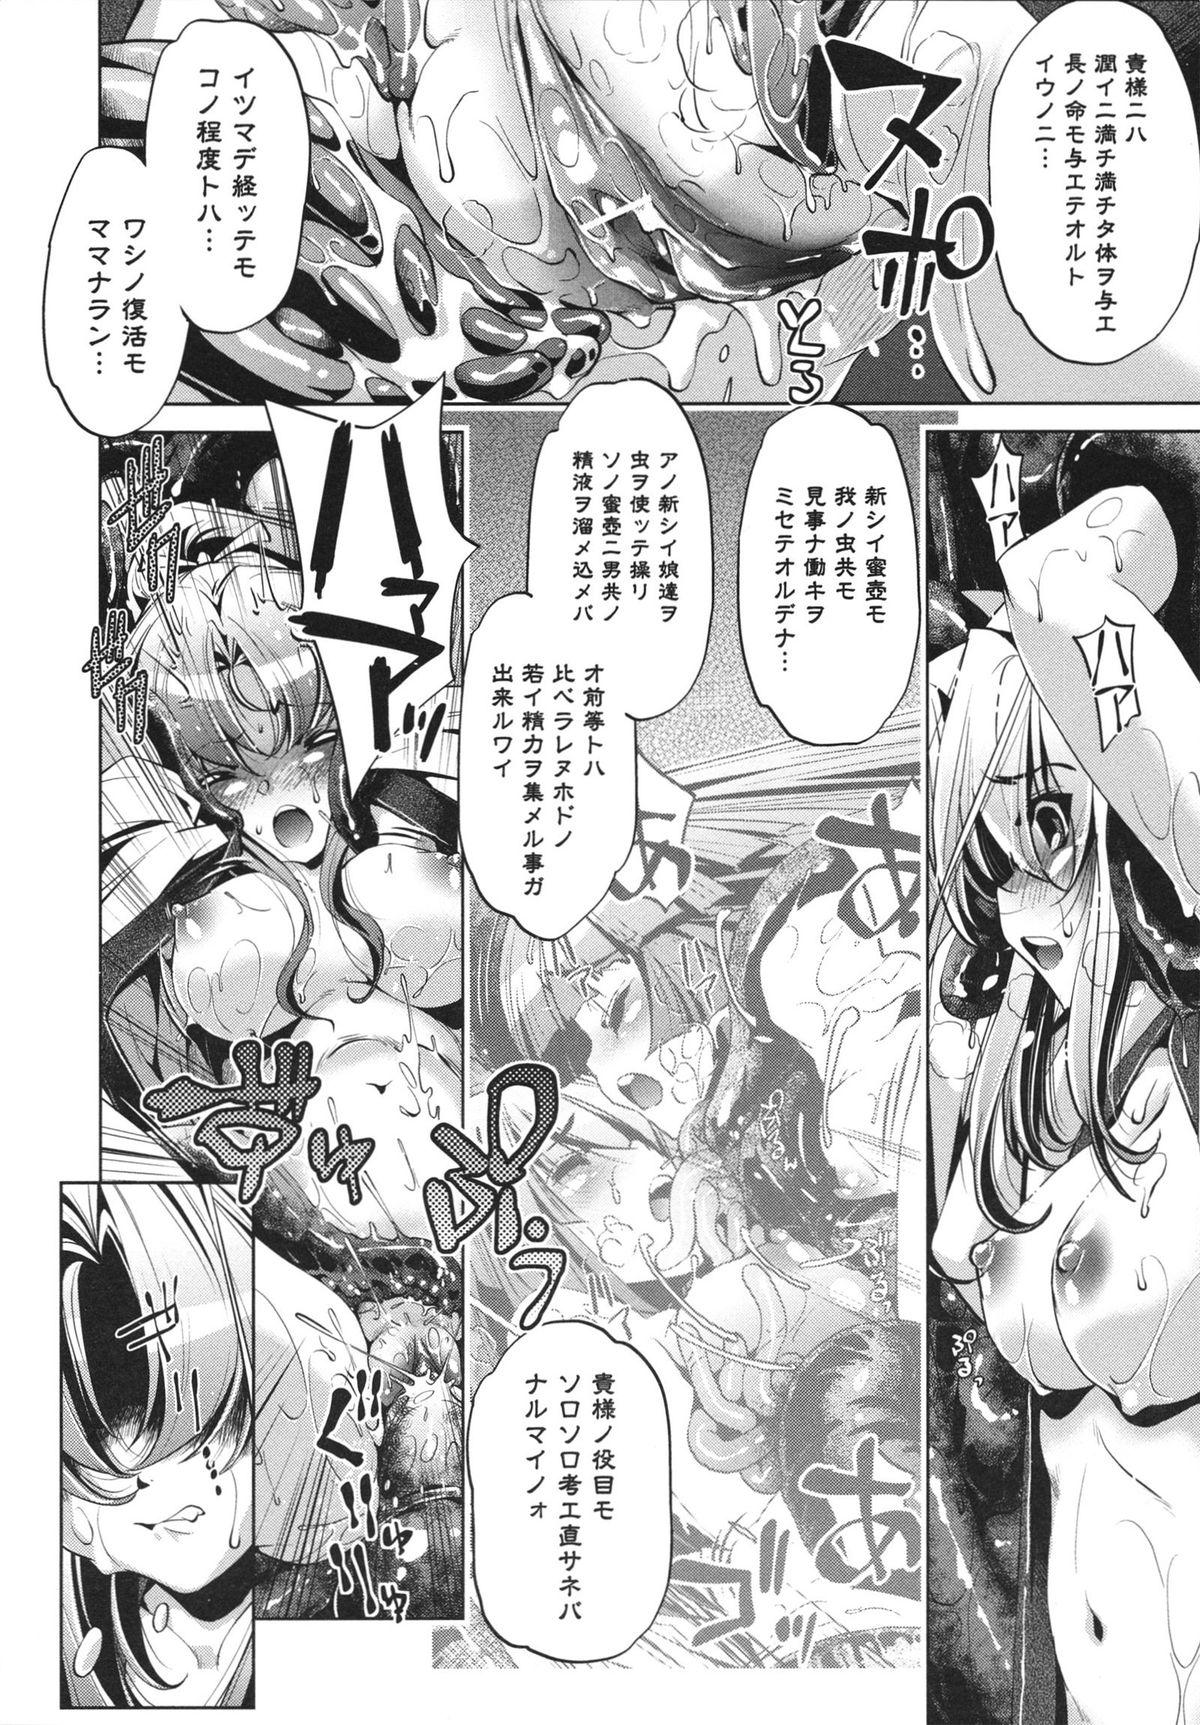 [Ootori Ryuuji] Shokushu wa Yawarakana Chibusa ni Makitsuki Onna-tachi no Ana wo Kakimidasu - Feeler coils around a soft breast and violates women's hole. 77